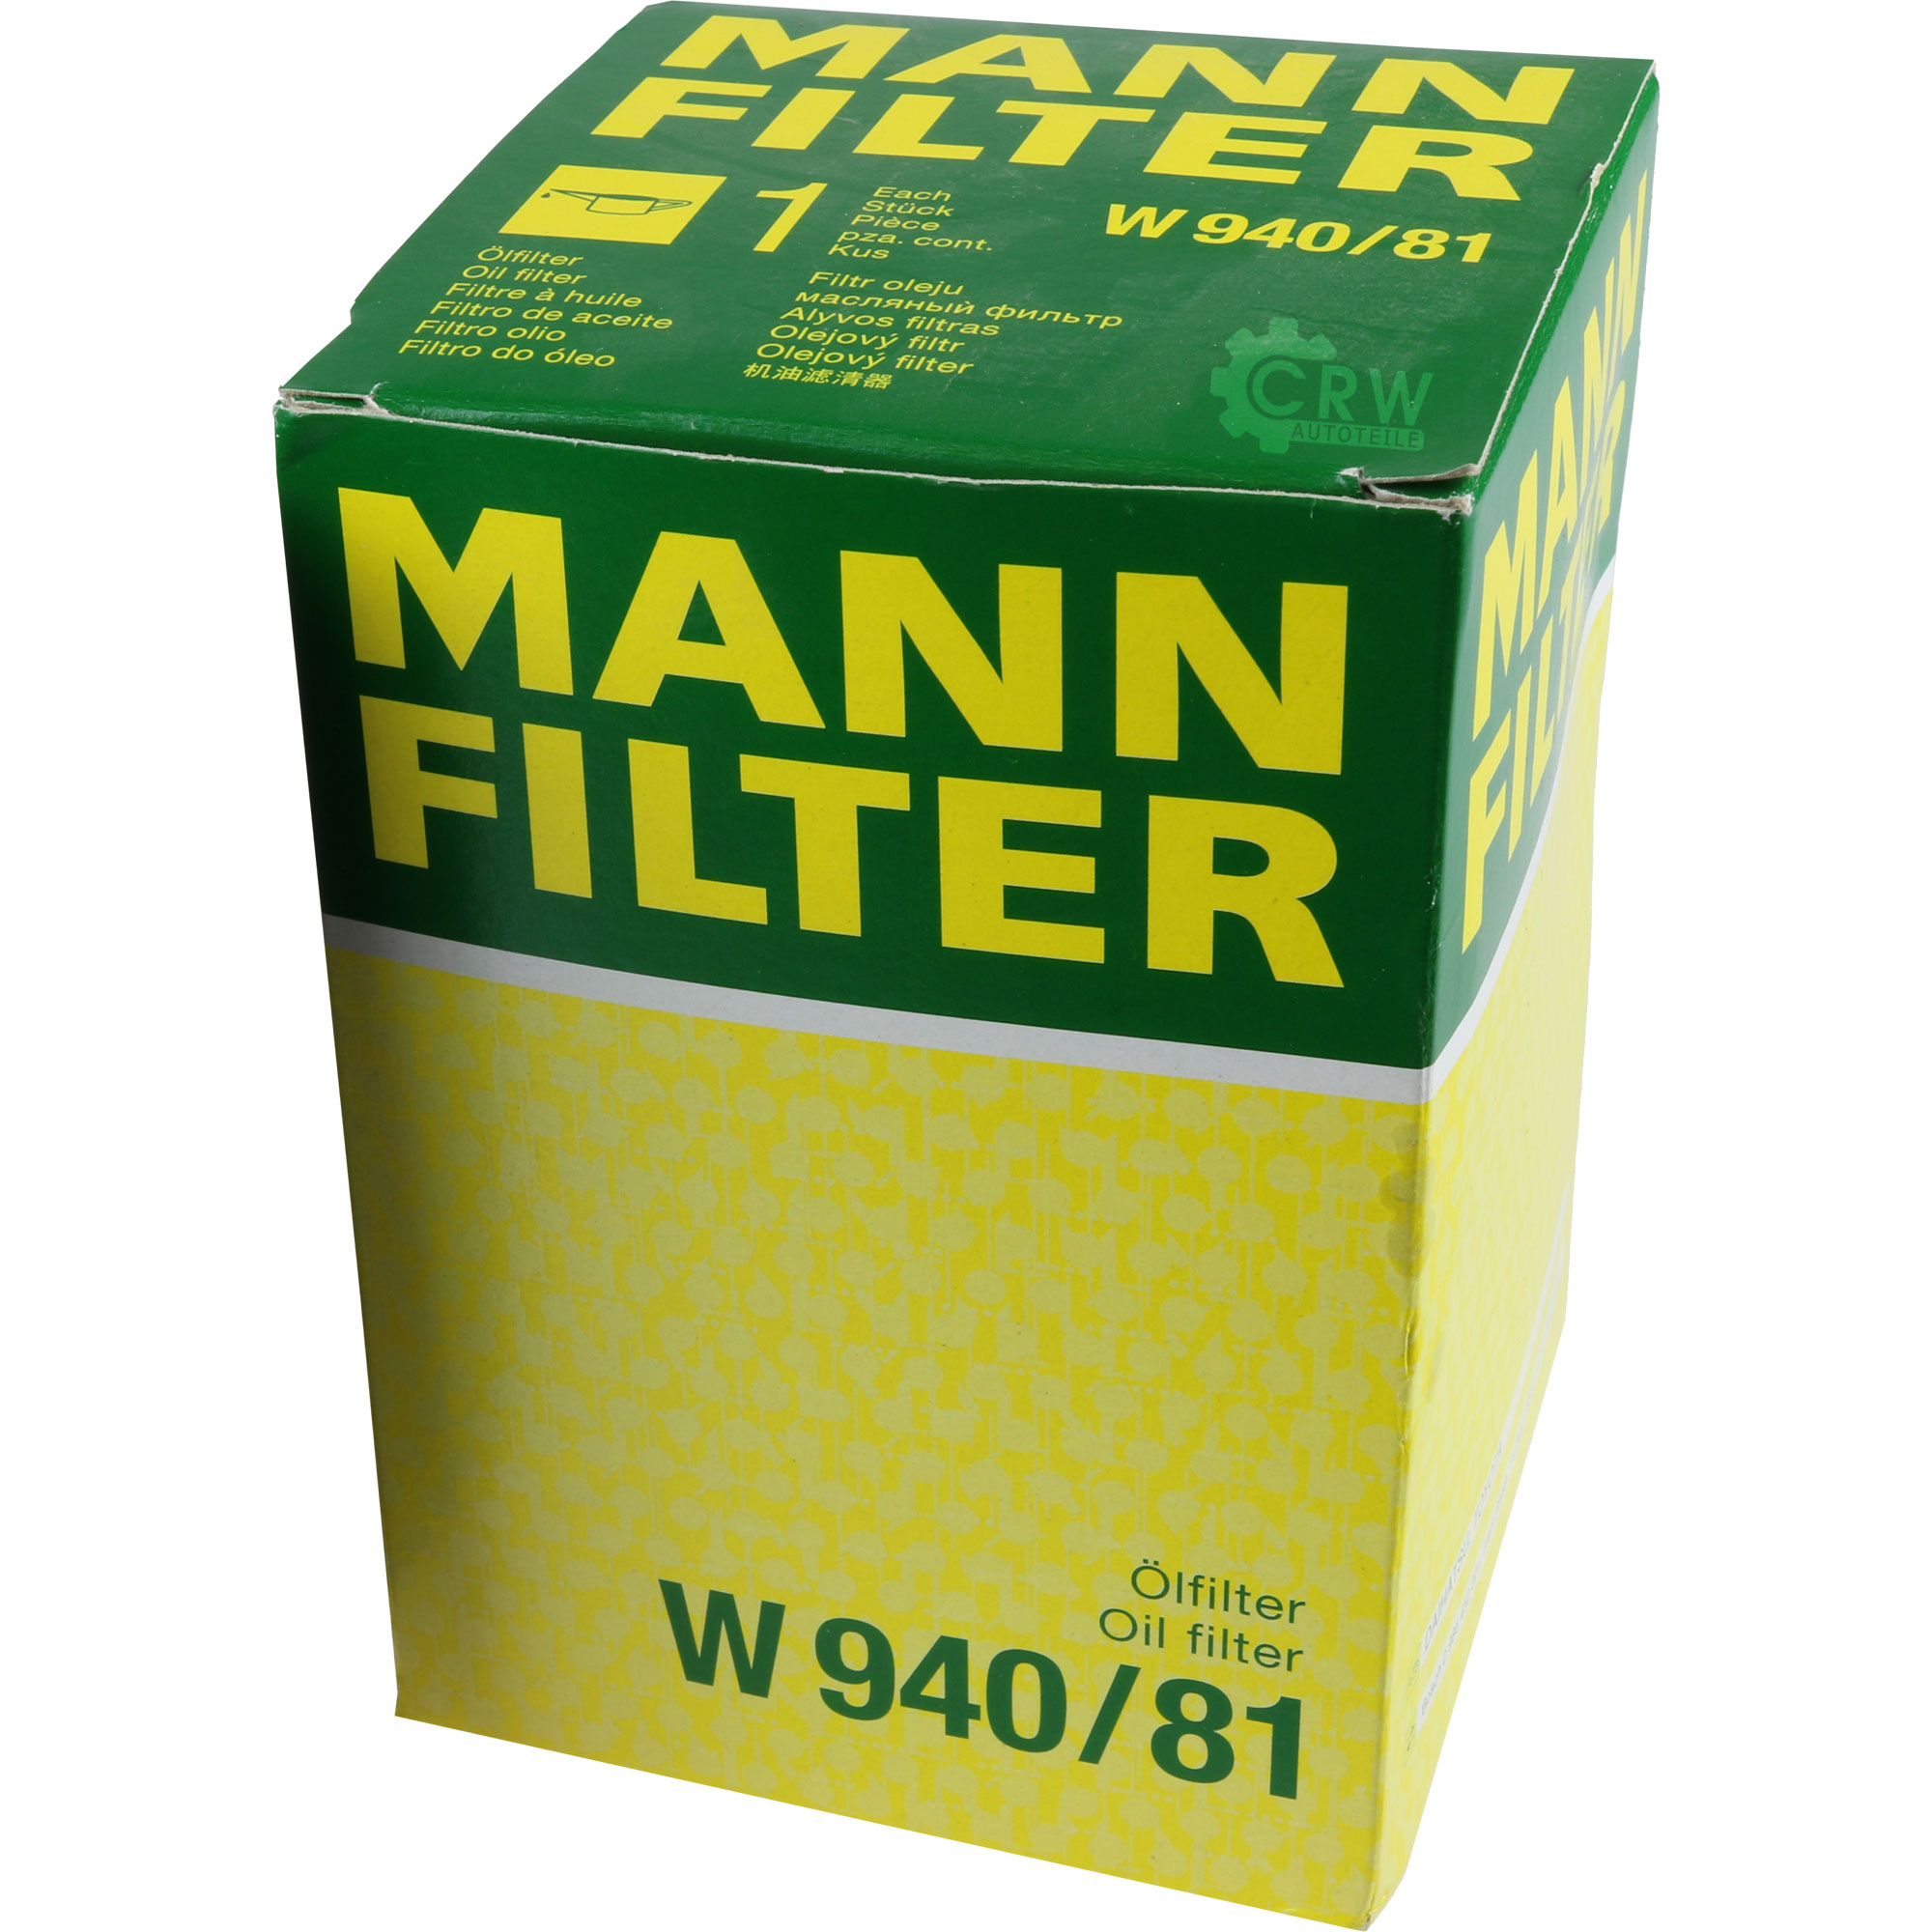 MANN-FILTER Ölfilter W 940/81 Oil Filter